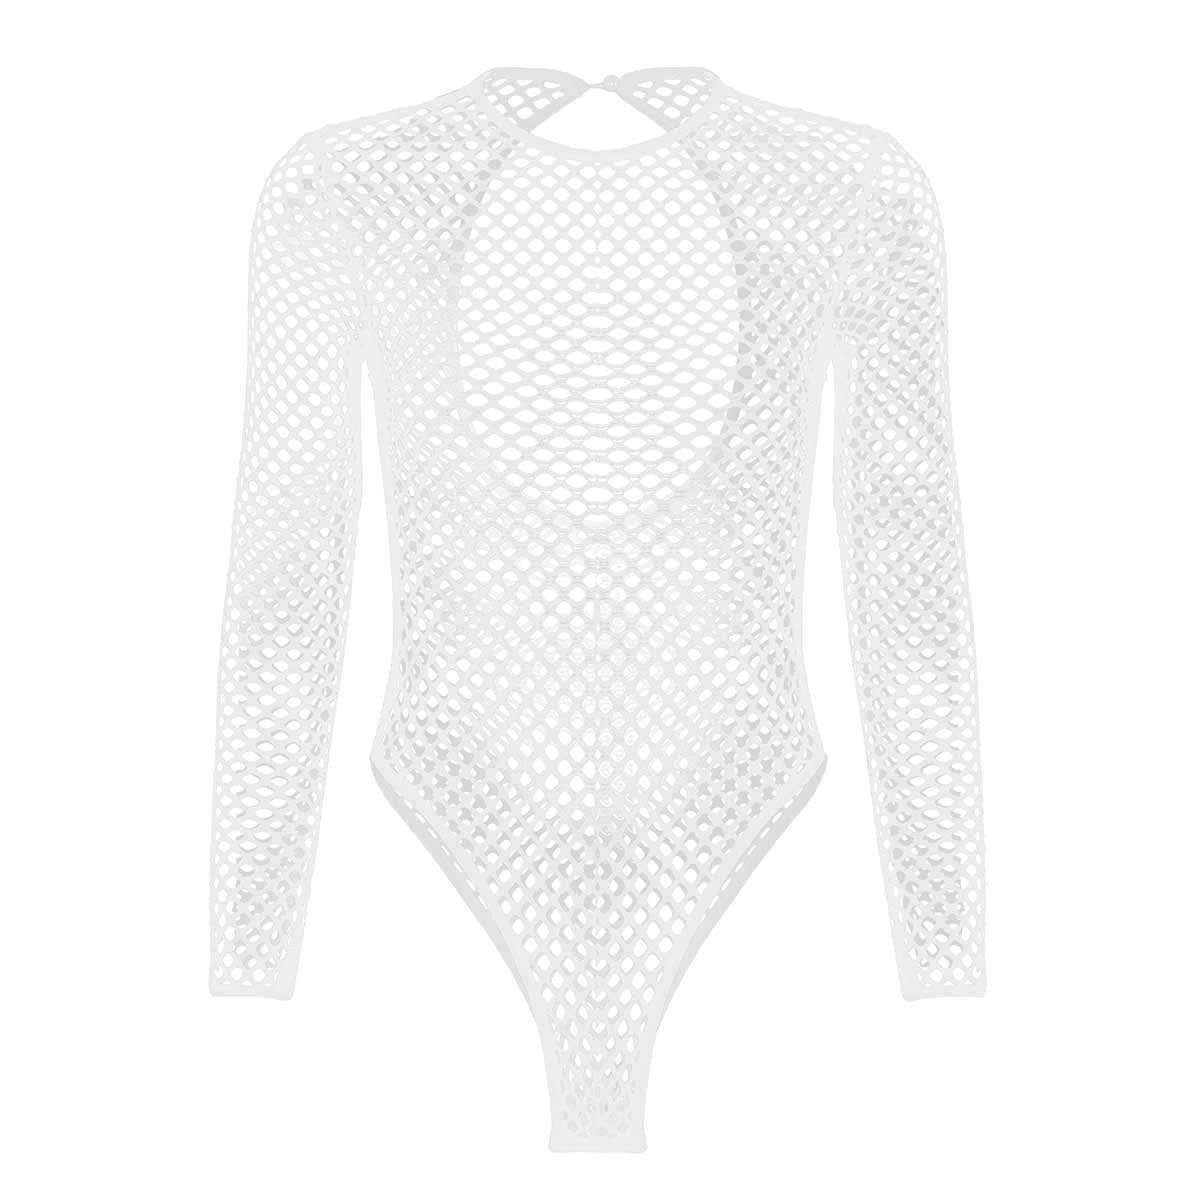 Fishnet High Cut Lingerie Bodysuit